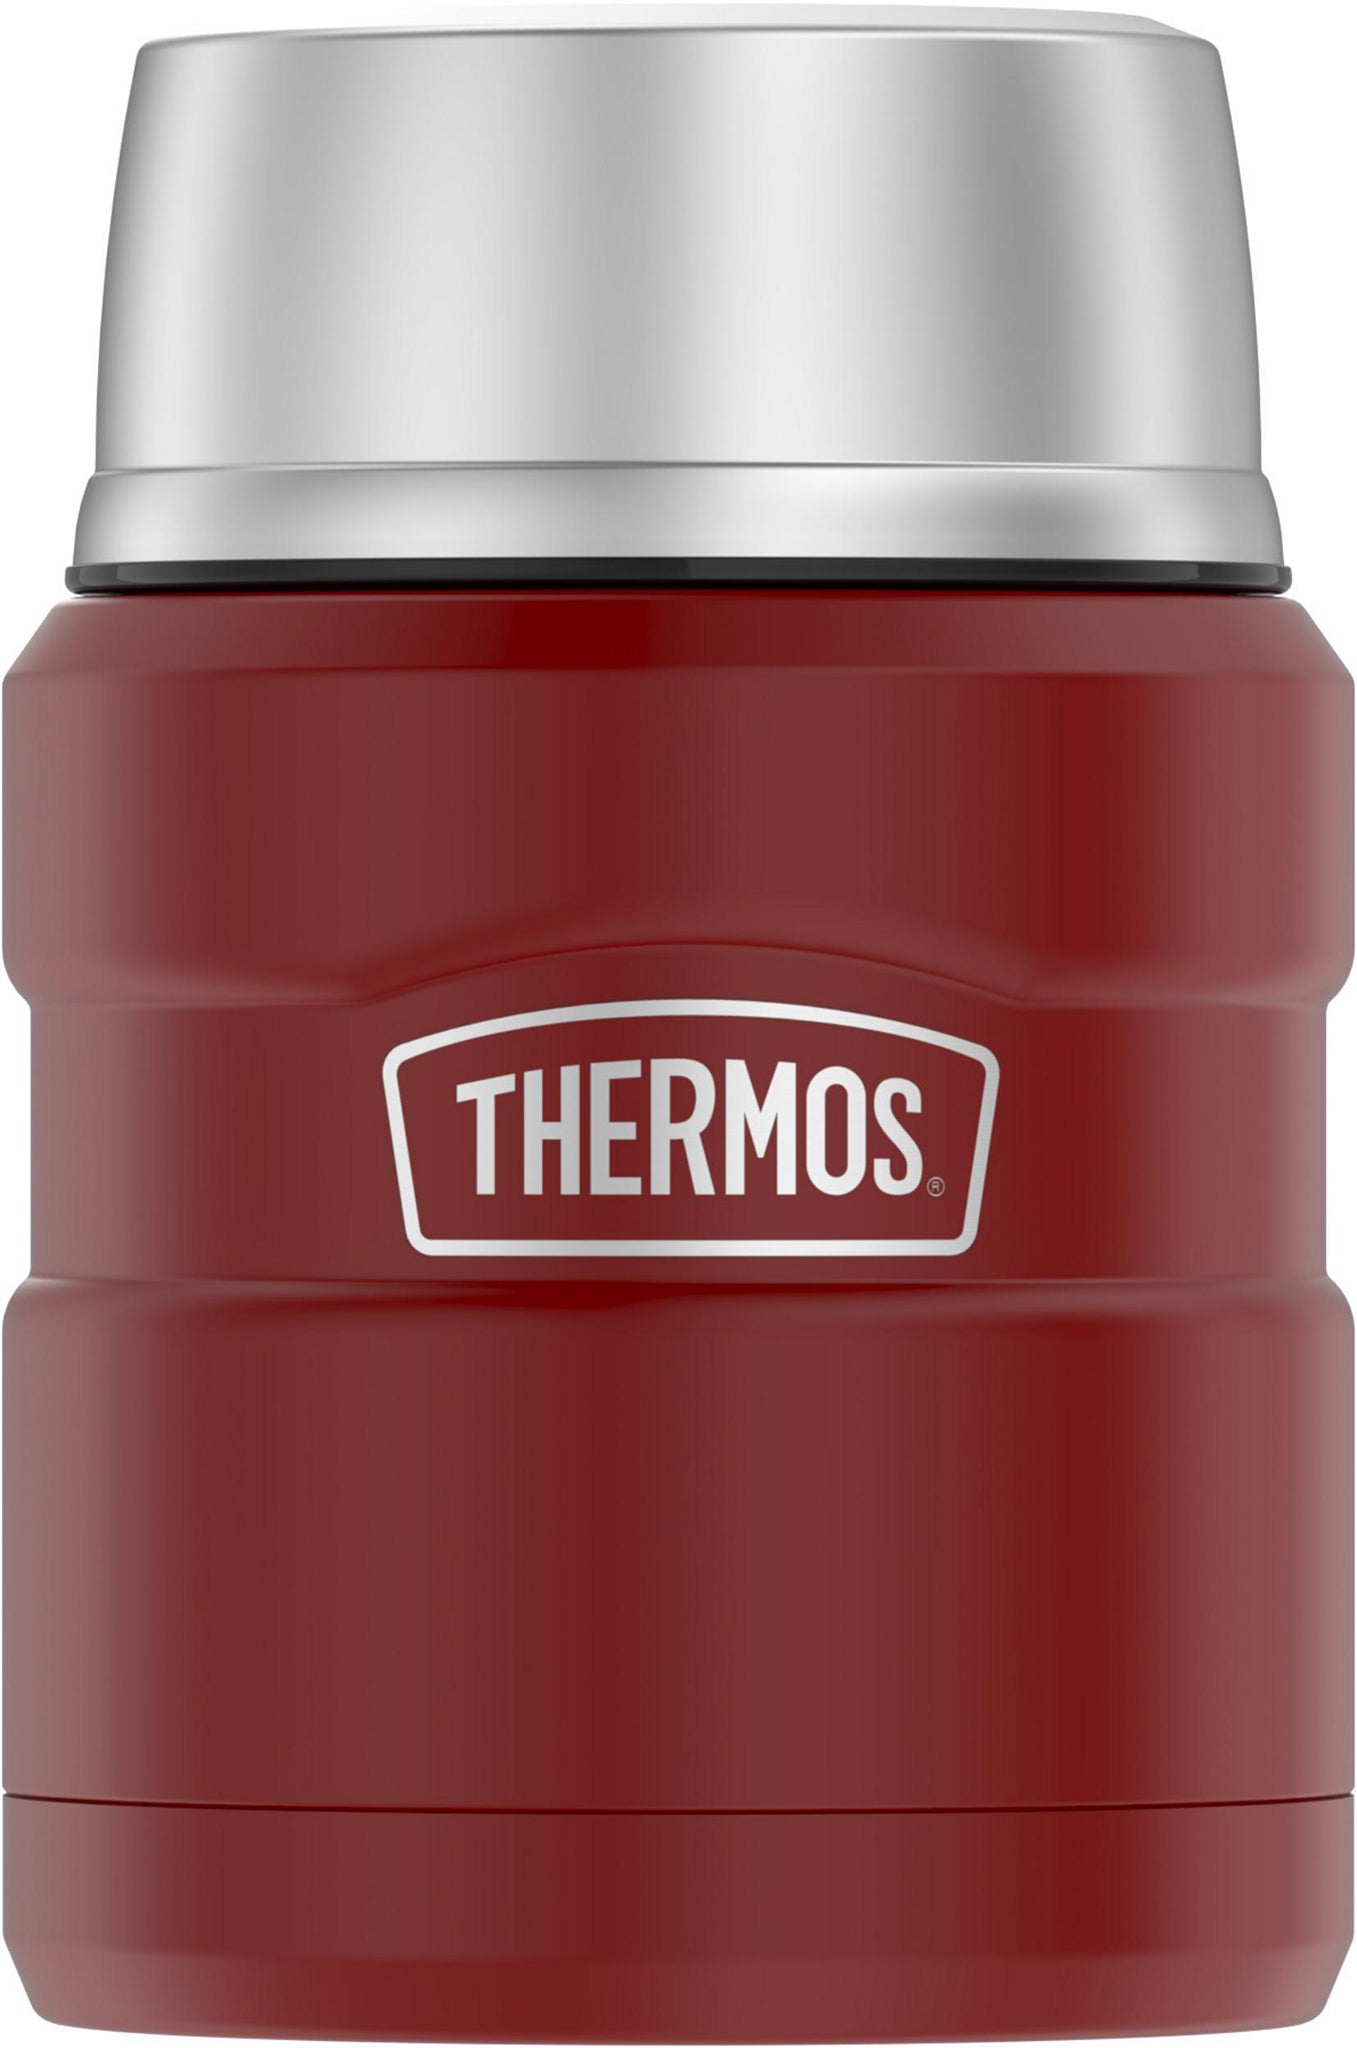 Contenant alimentaire en acier inoxydable - 470 ml - Thermos